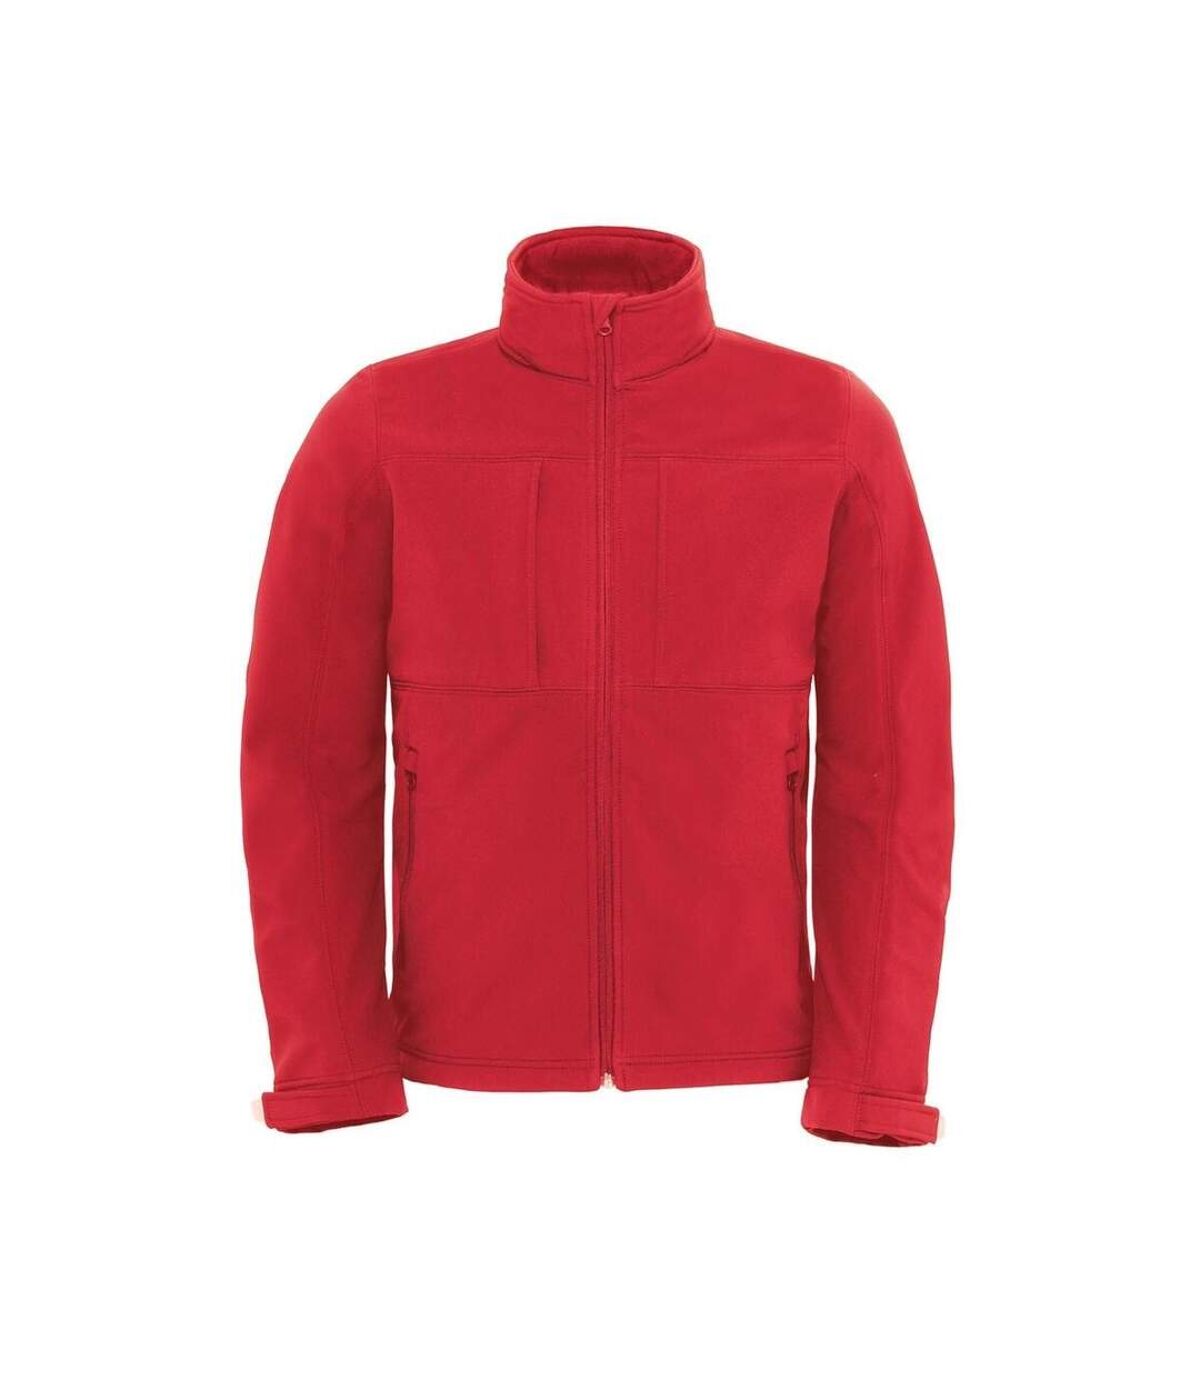 Veste softshell à capuche - hautes performances - JM950 - rouge - Homme